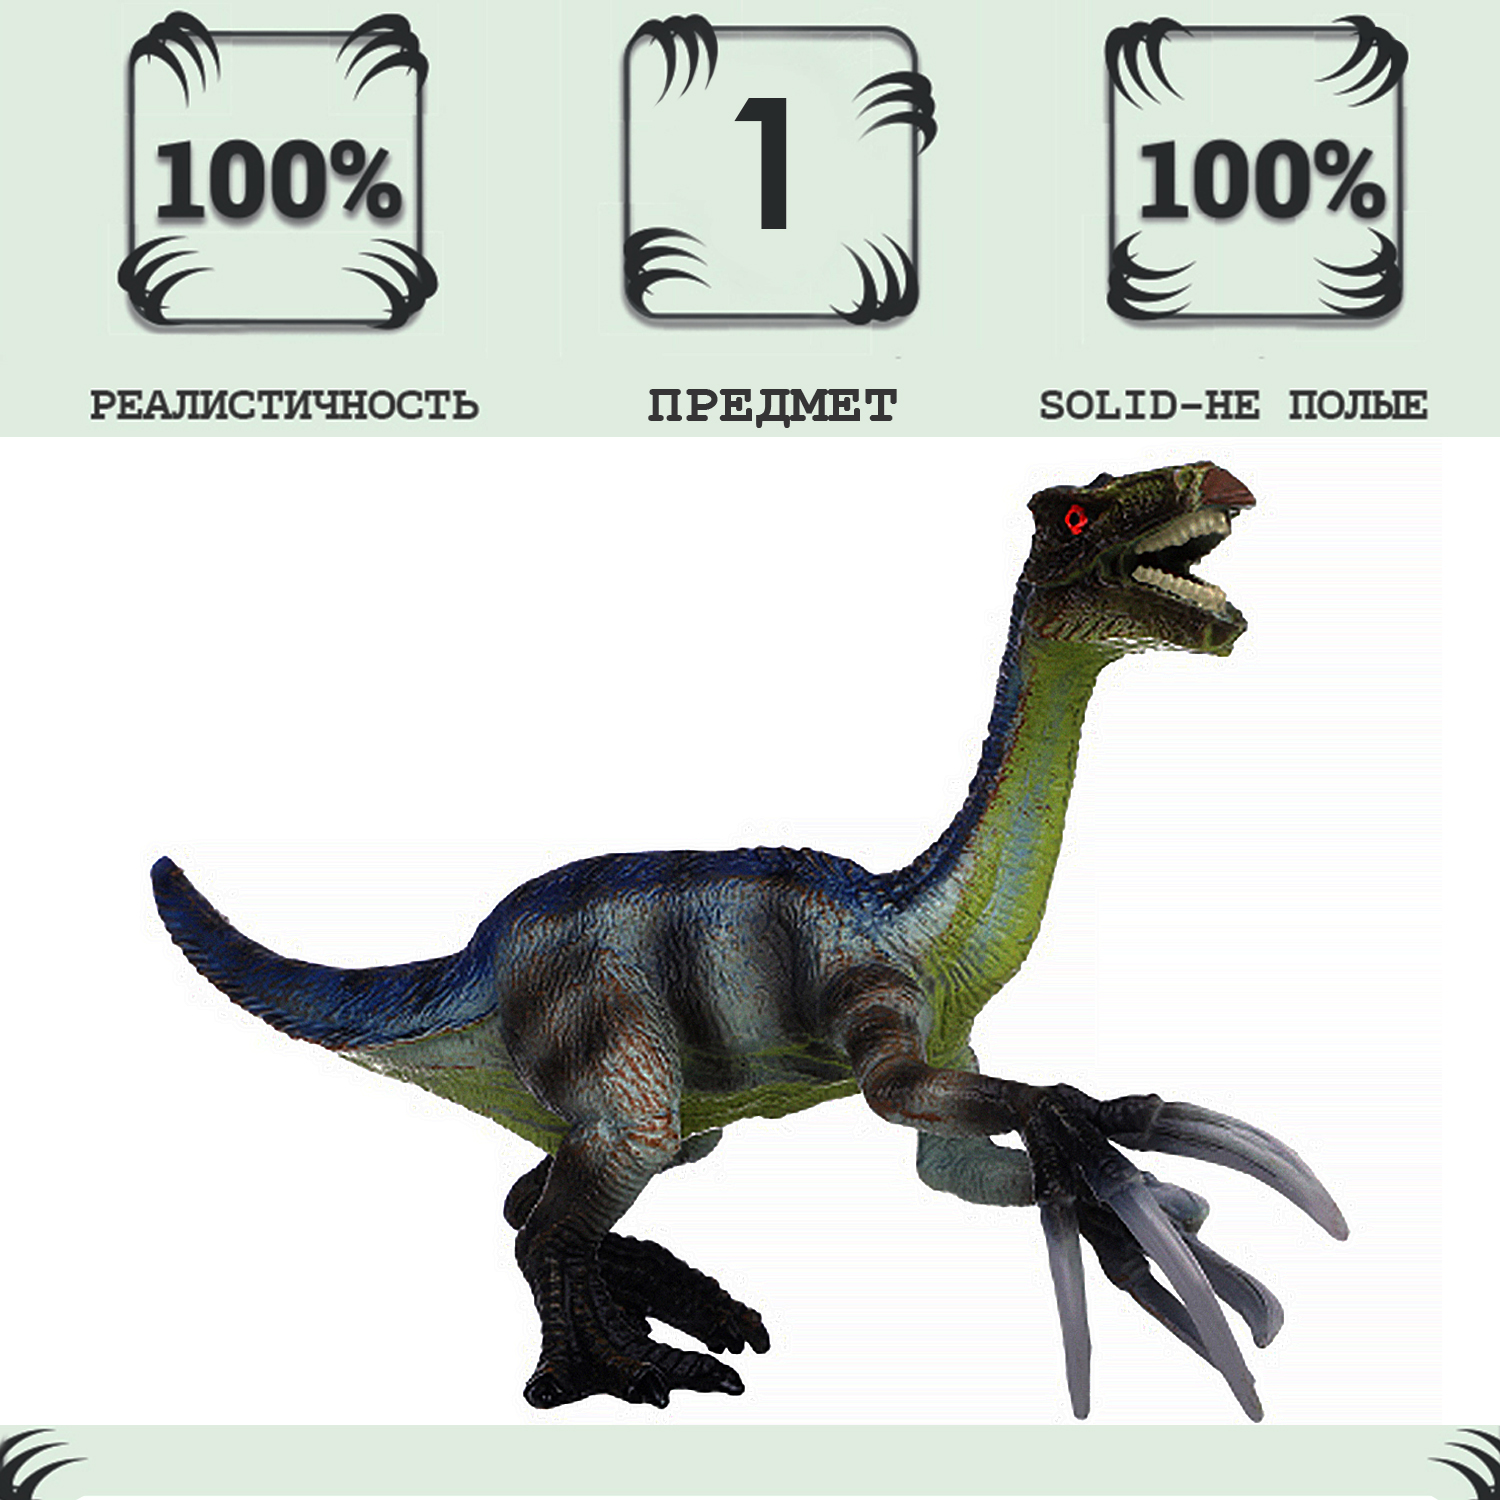 Игрушка динозавр серии Мир динозавров Masai Mara Теризинозавр MM216-385